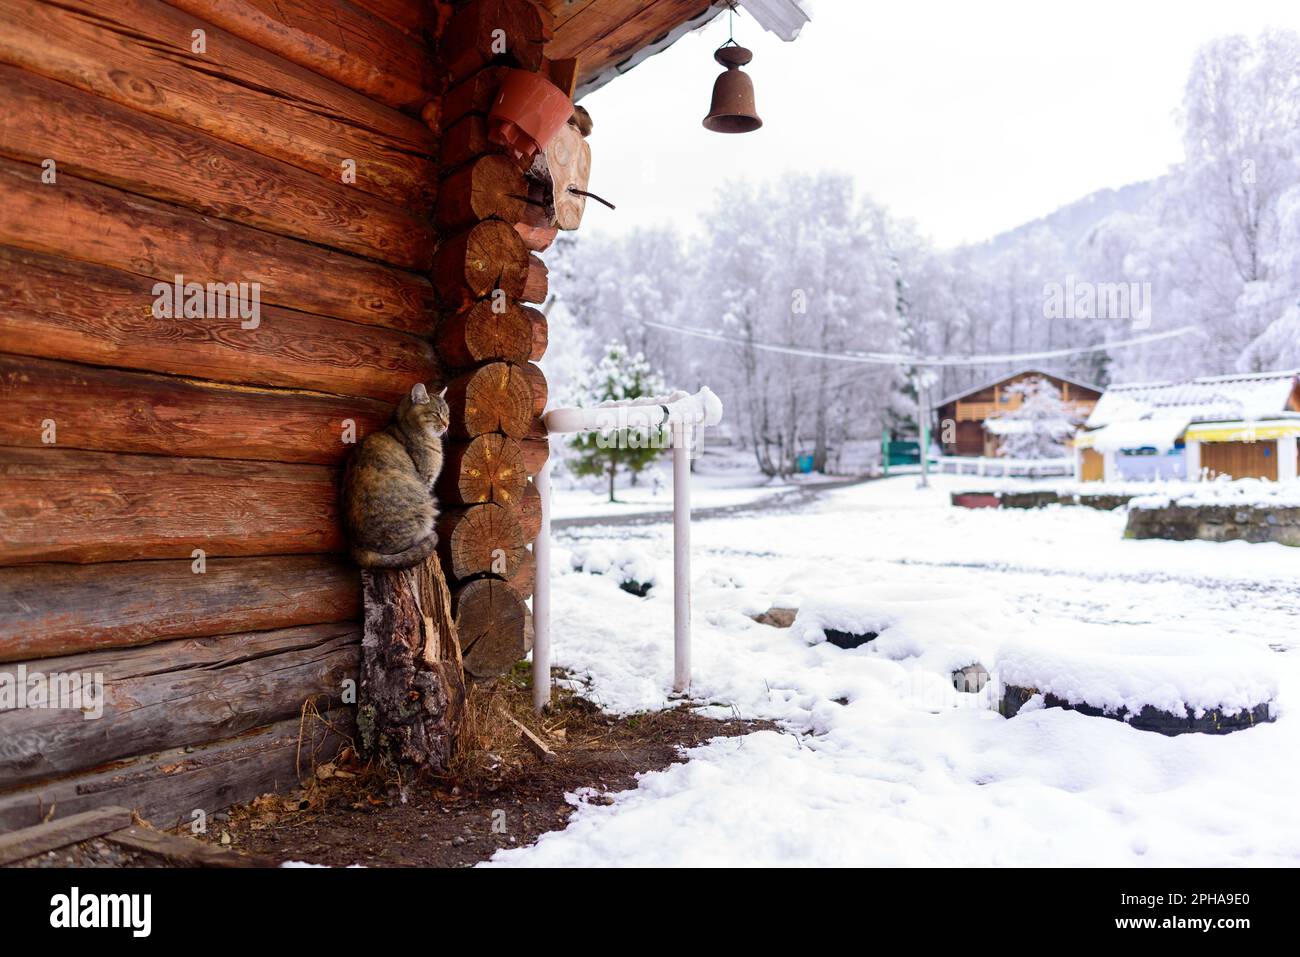 Le chat du village se trouve sur une souche près du mur d'une maison en bois avec une cloche sur le couvercle dans la neige du village. Banque D'Images